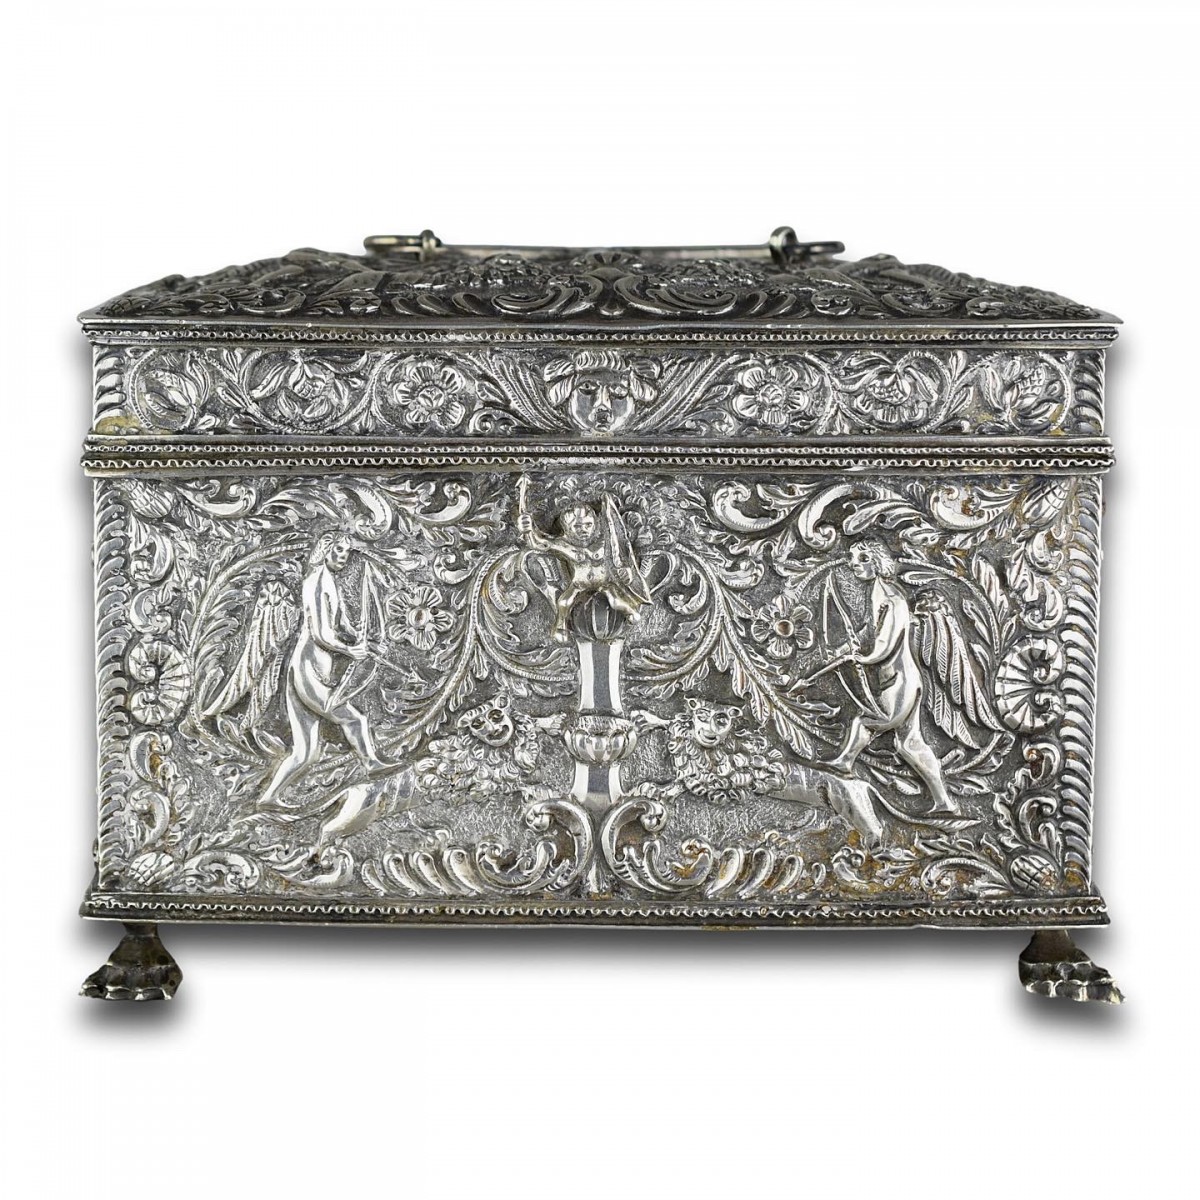 Repoussé silver marriage casket, Dutch19th century - Ref.103324